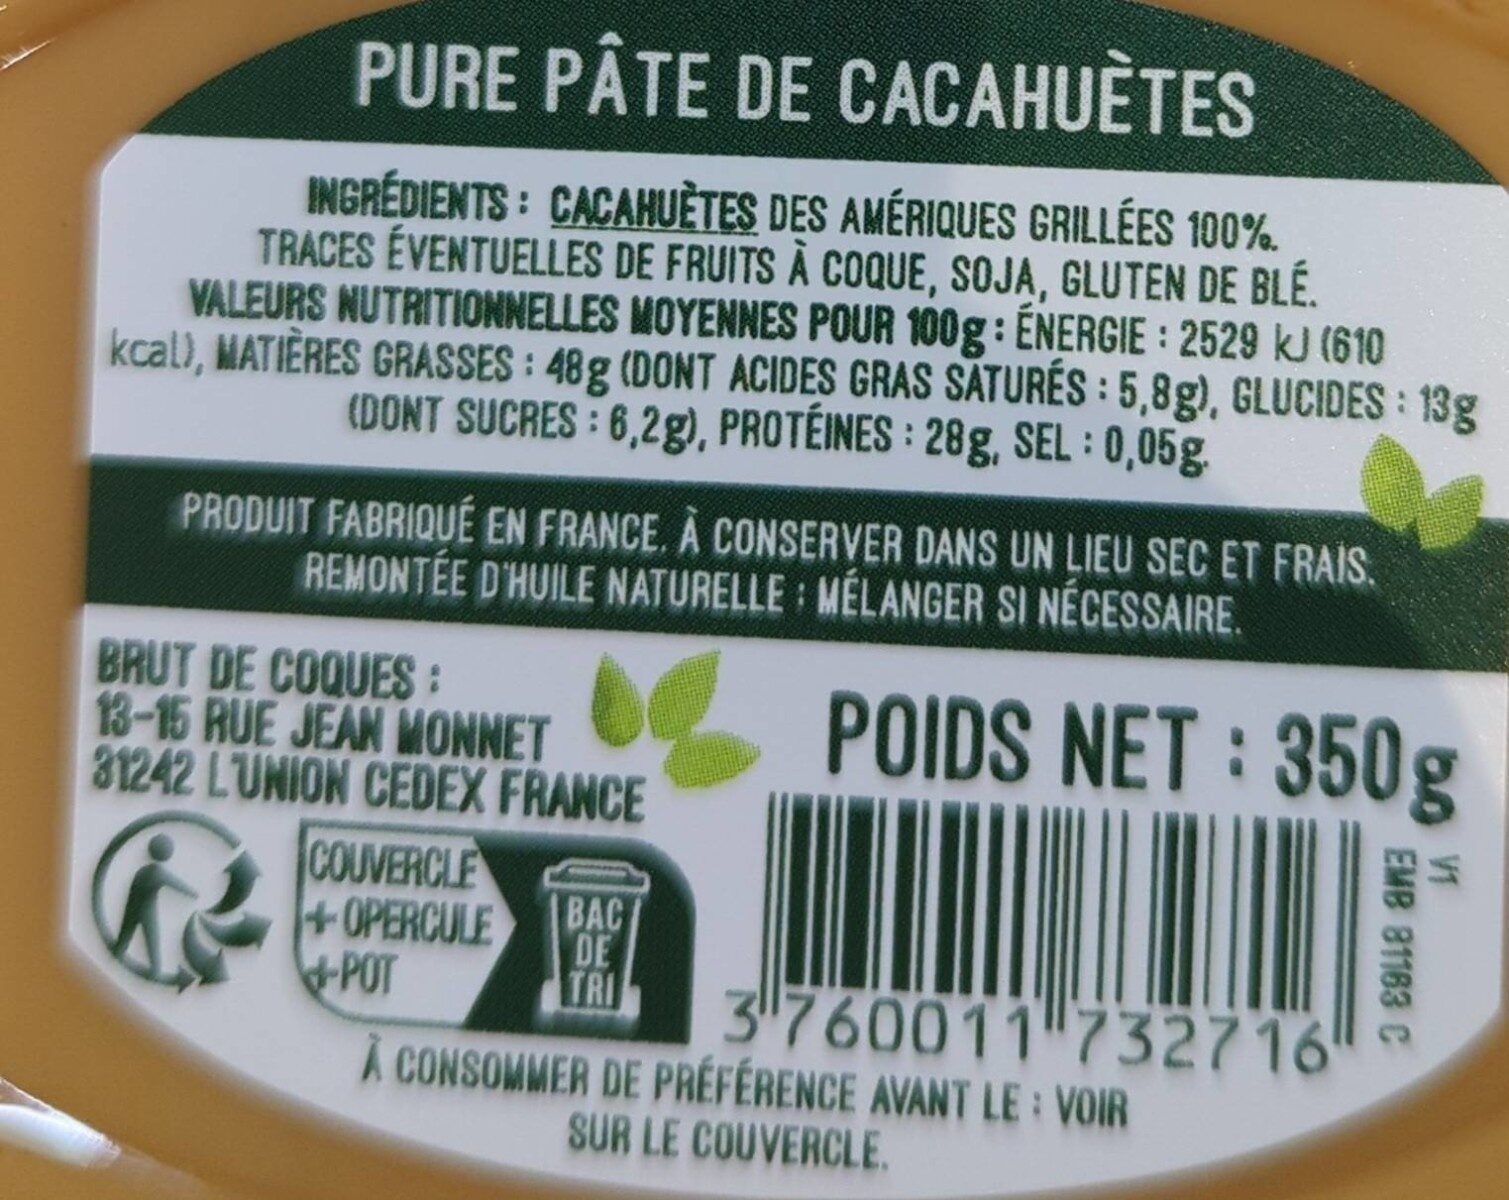 Pure pâte de cacahuètes - Nutrition facts - fr